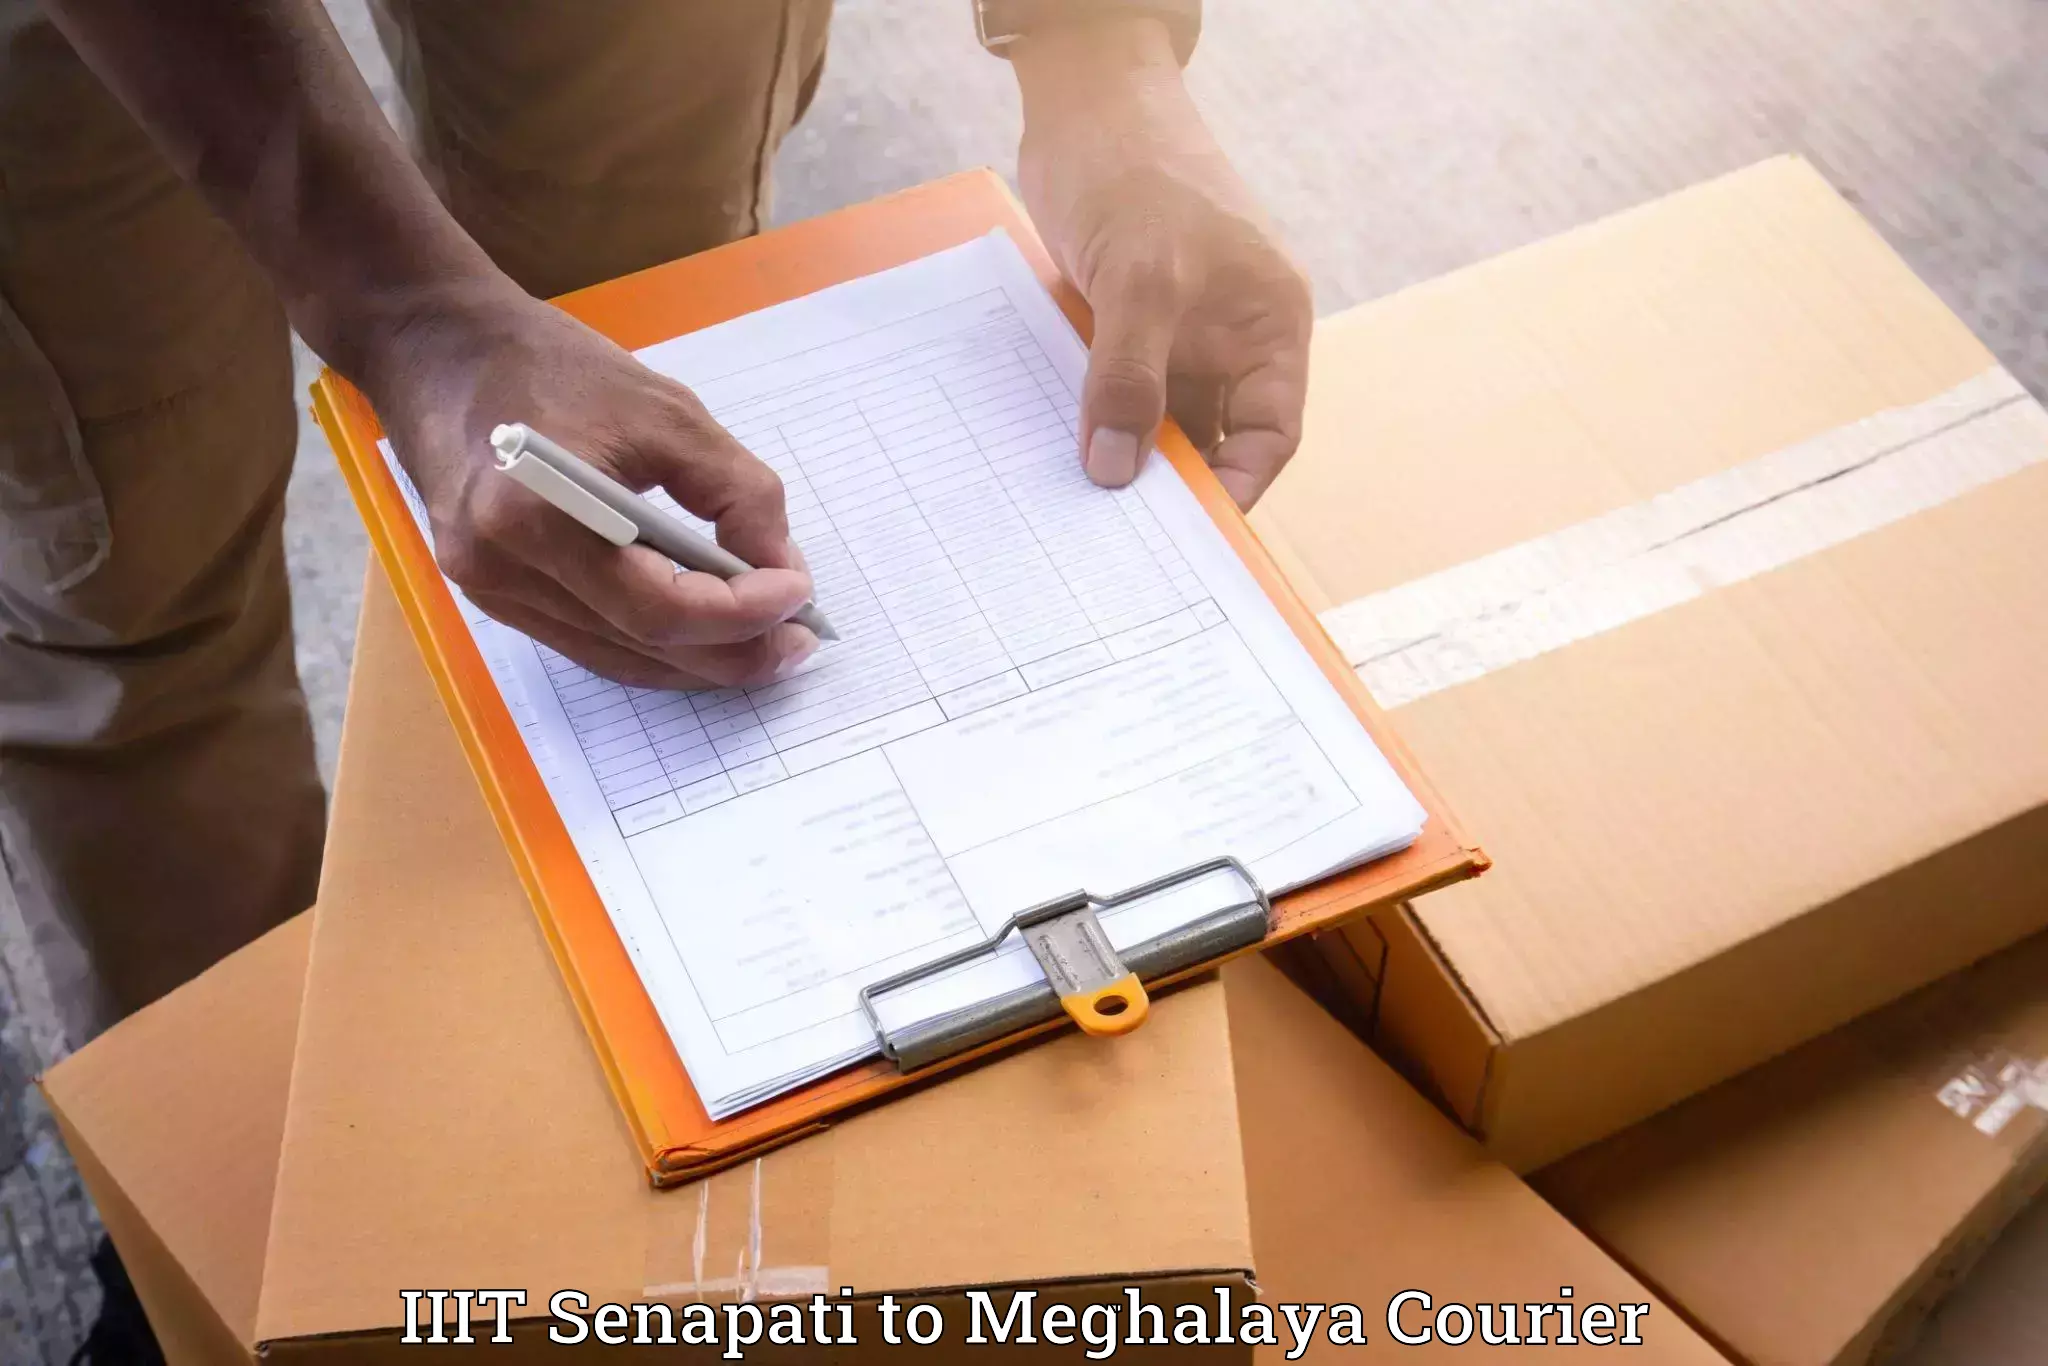 Personalized moving service IIIT Senapati to Meghalaya